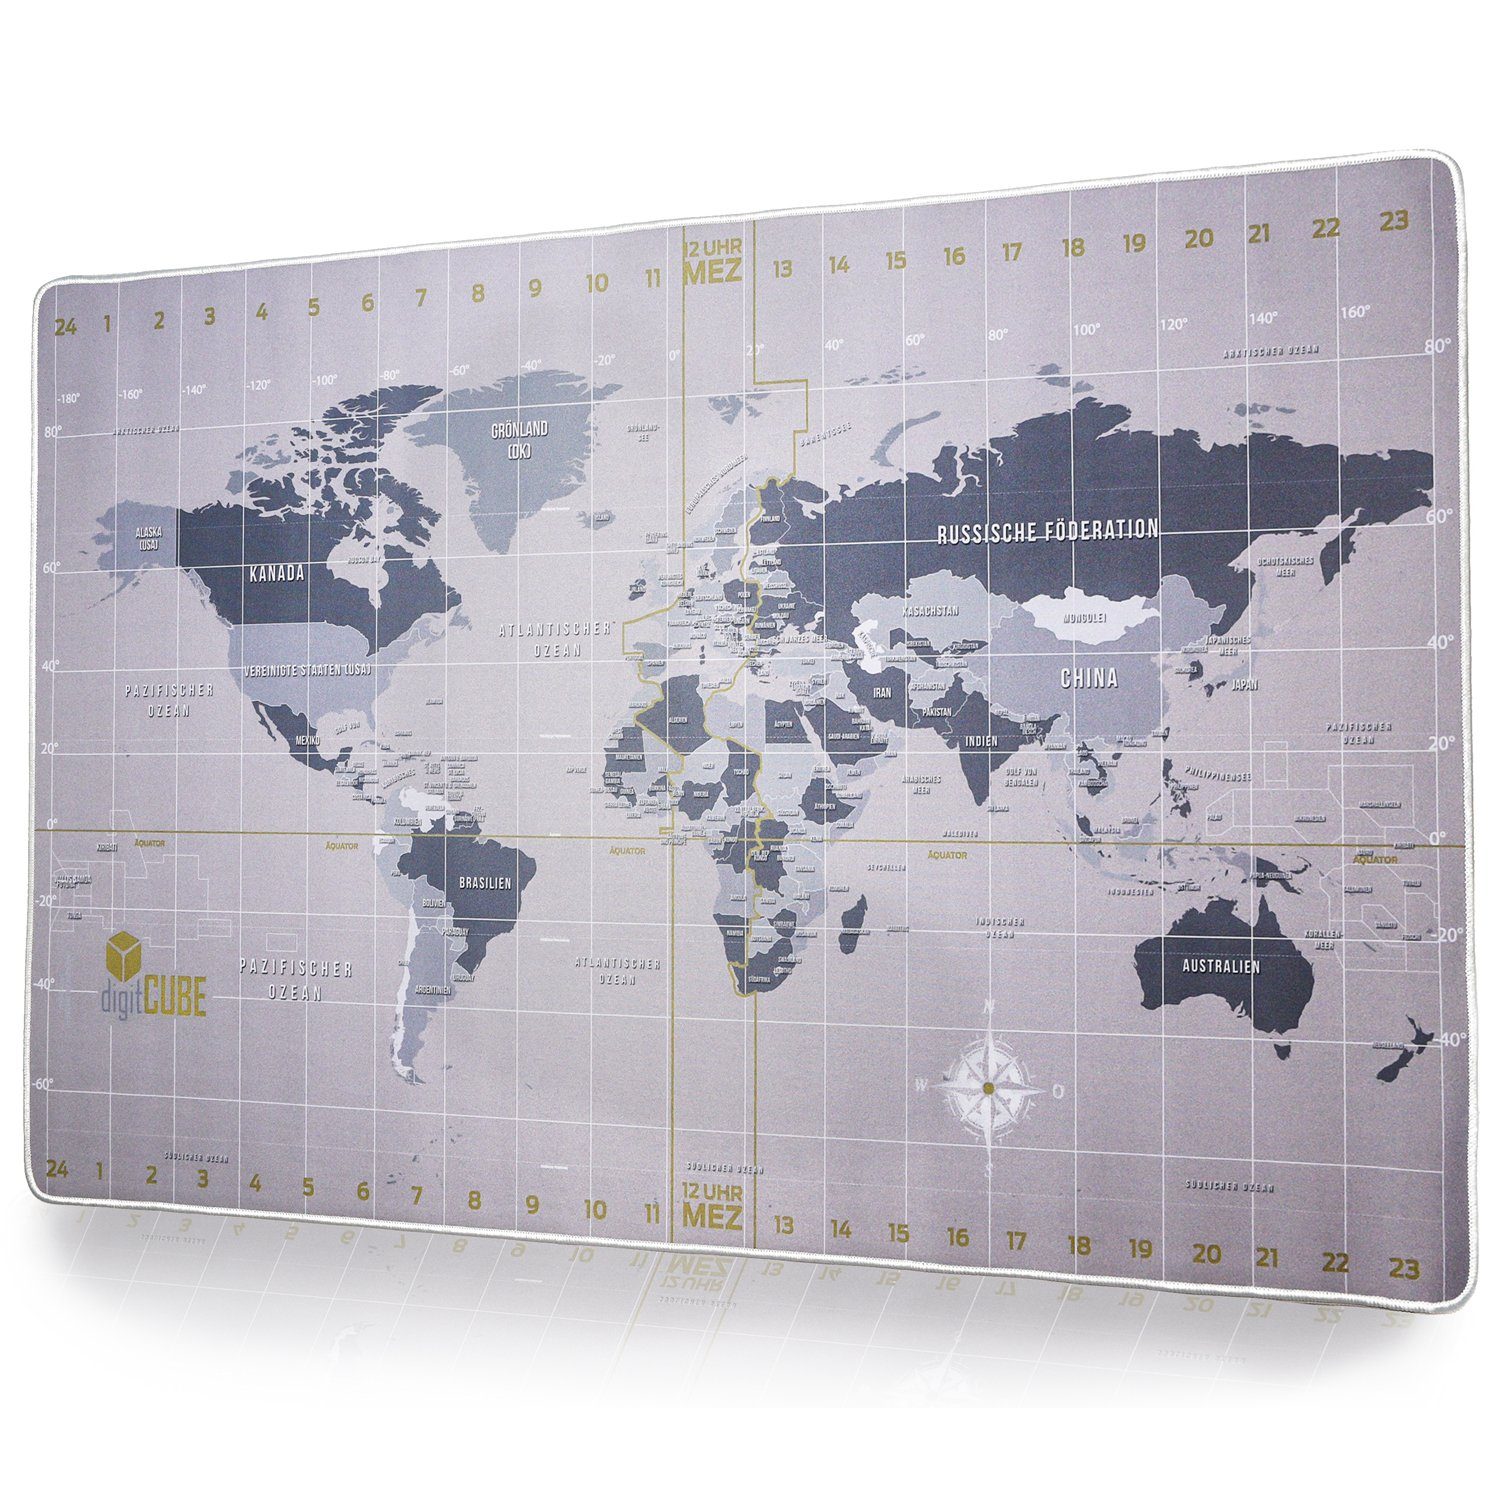 digitCUBE Schreibtischunterlage Tischunterlage Weltkarte 90x40cm mit deutschem Layout